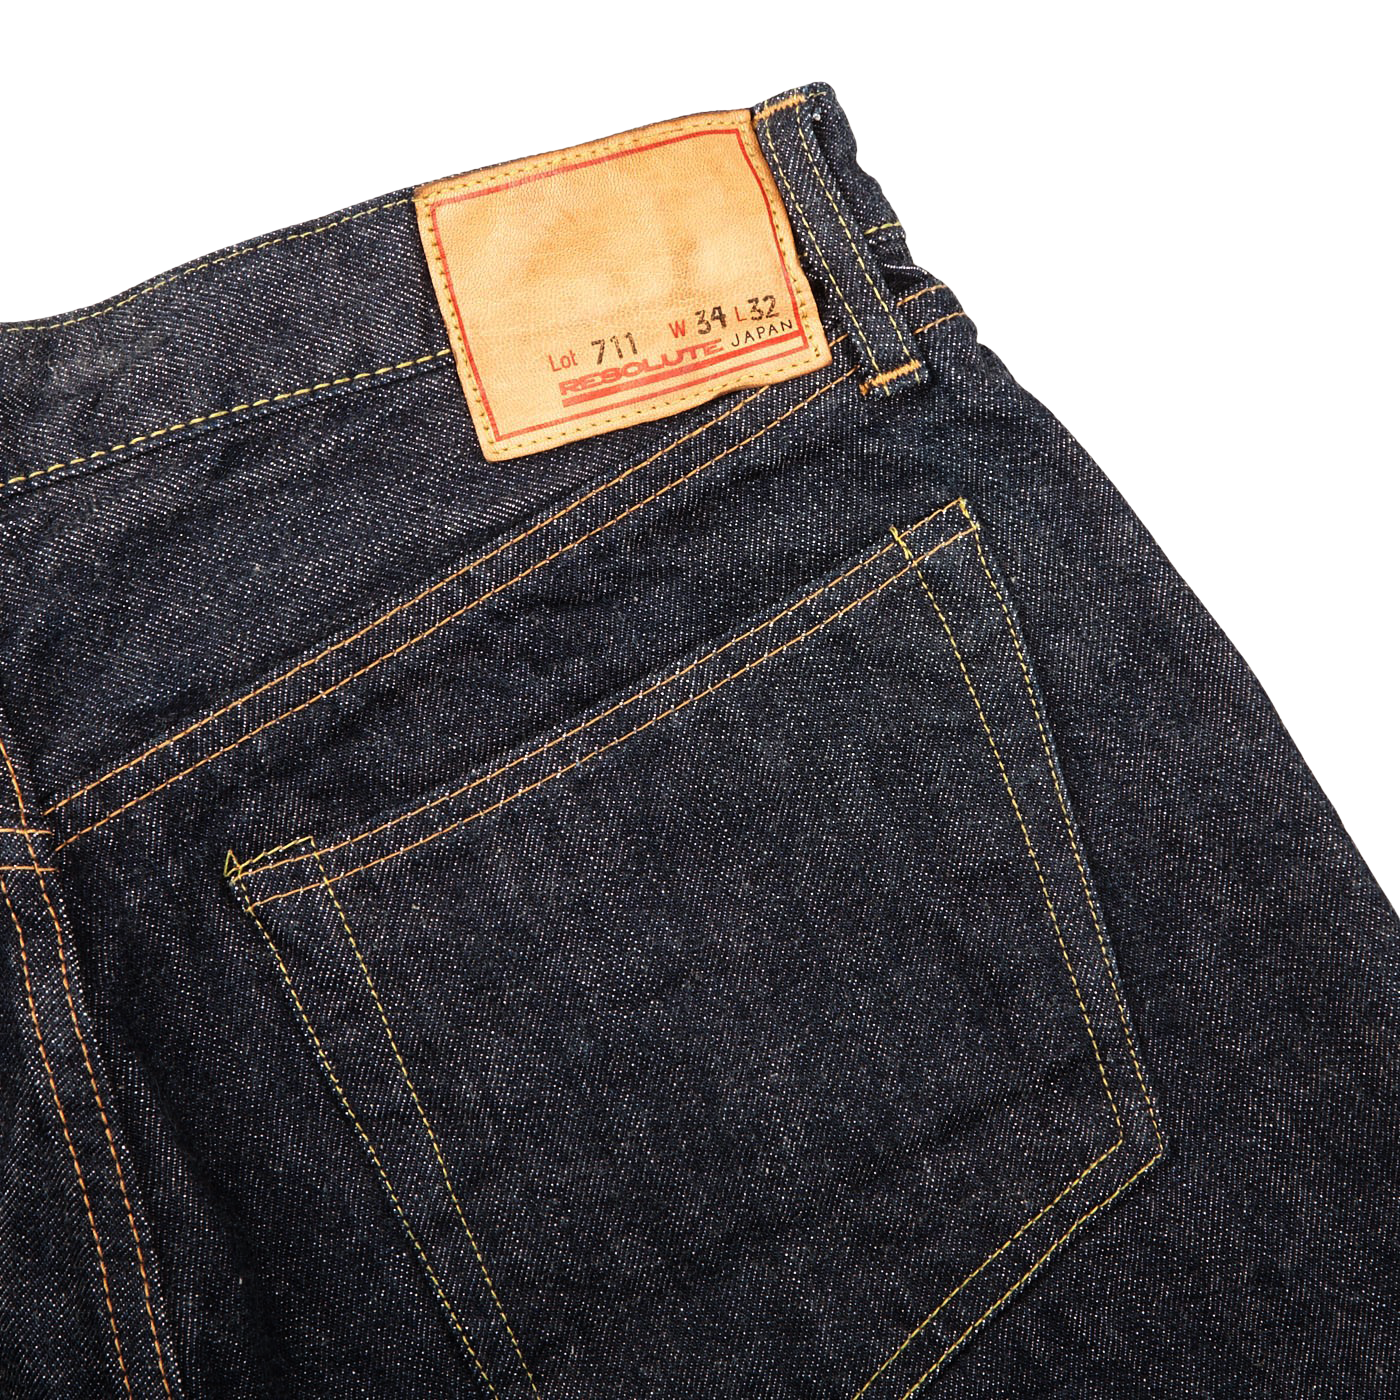 Resolute Dark Blue Cotton 711 One Wash Jeans Pocket